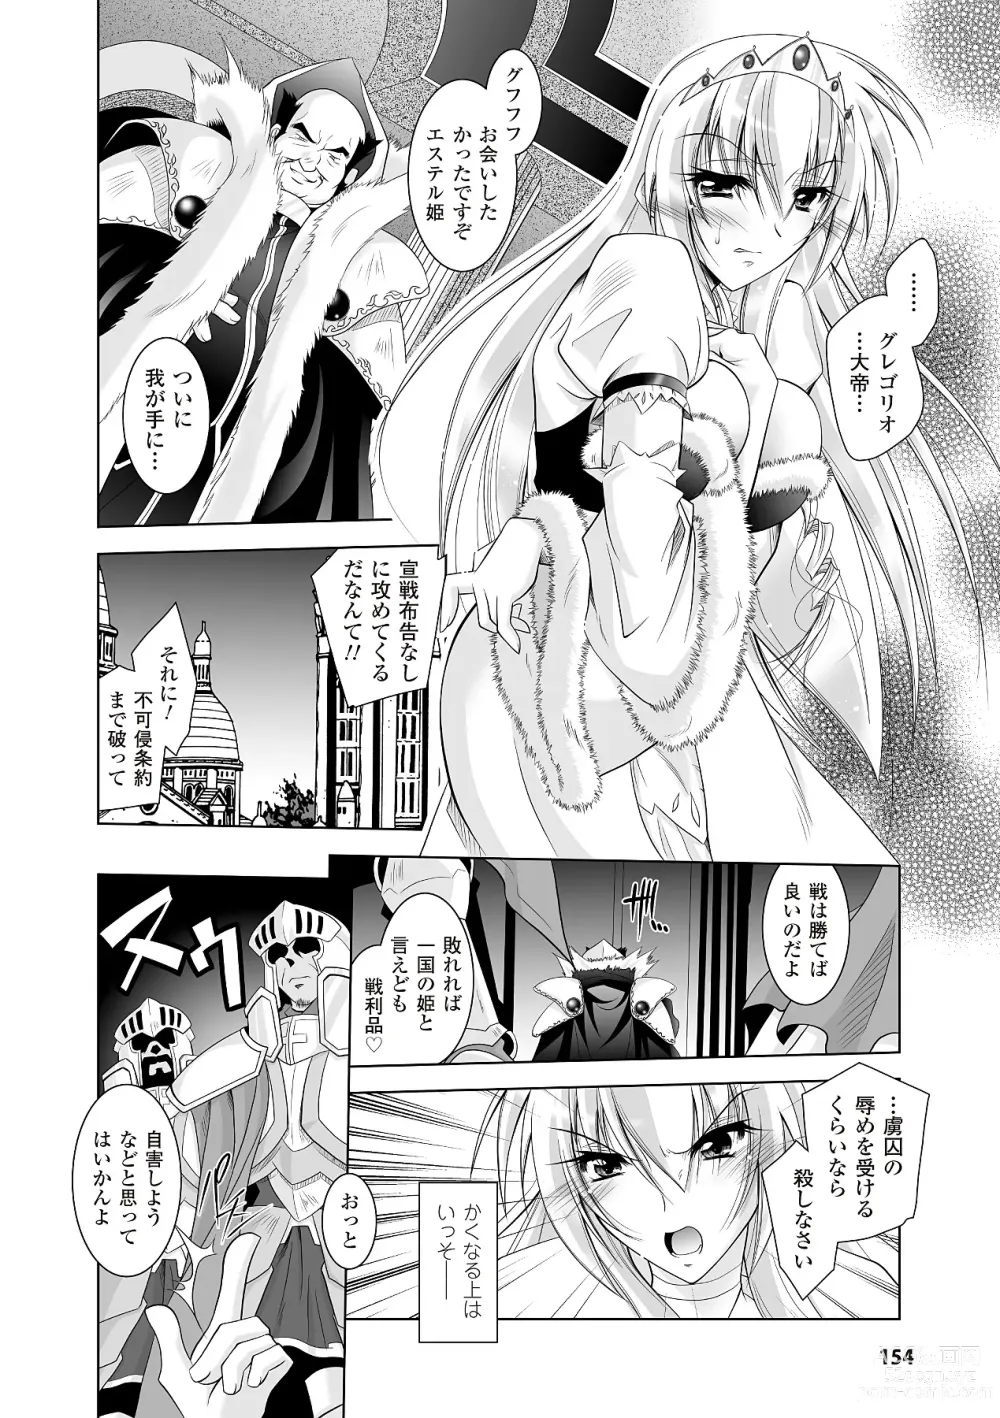 Page 154 of manga Datenshi-tachi no Rhapsody - Fallen Angels Rhapsody